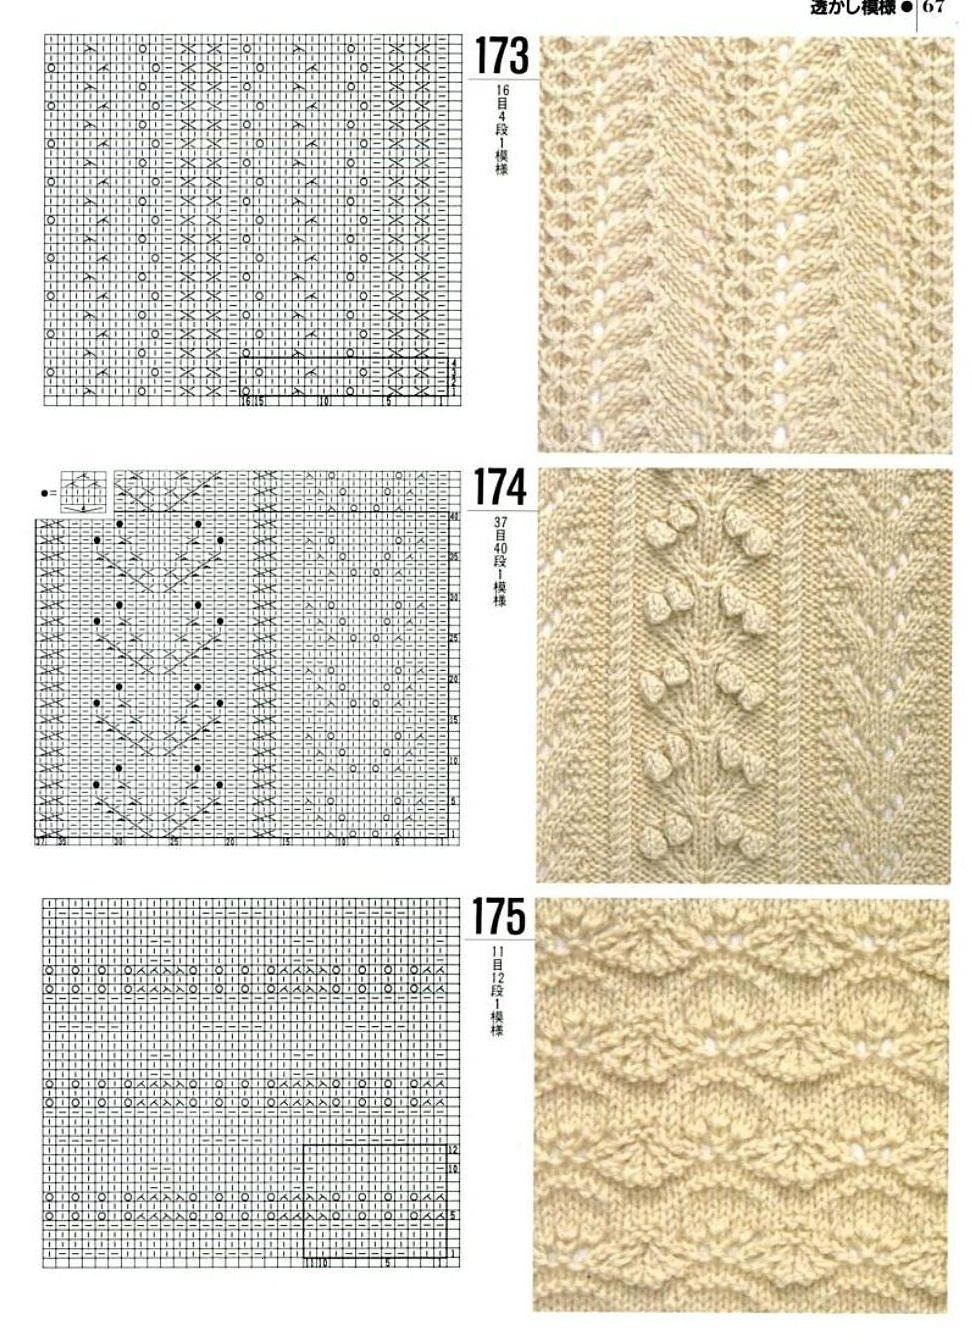 Μοτίβα μοτίβων για πλέξιμο γυναικεία γιλέκα με βελόνες πλέξιμο, Παράδειγμα 10